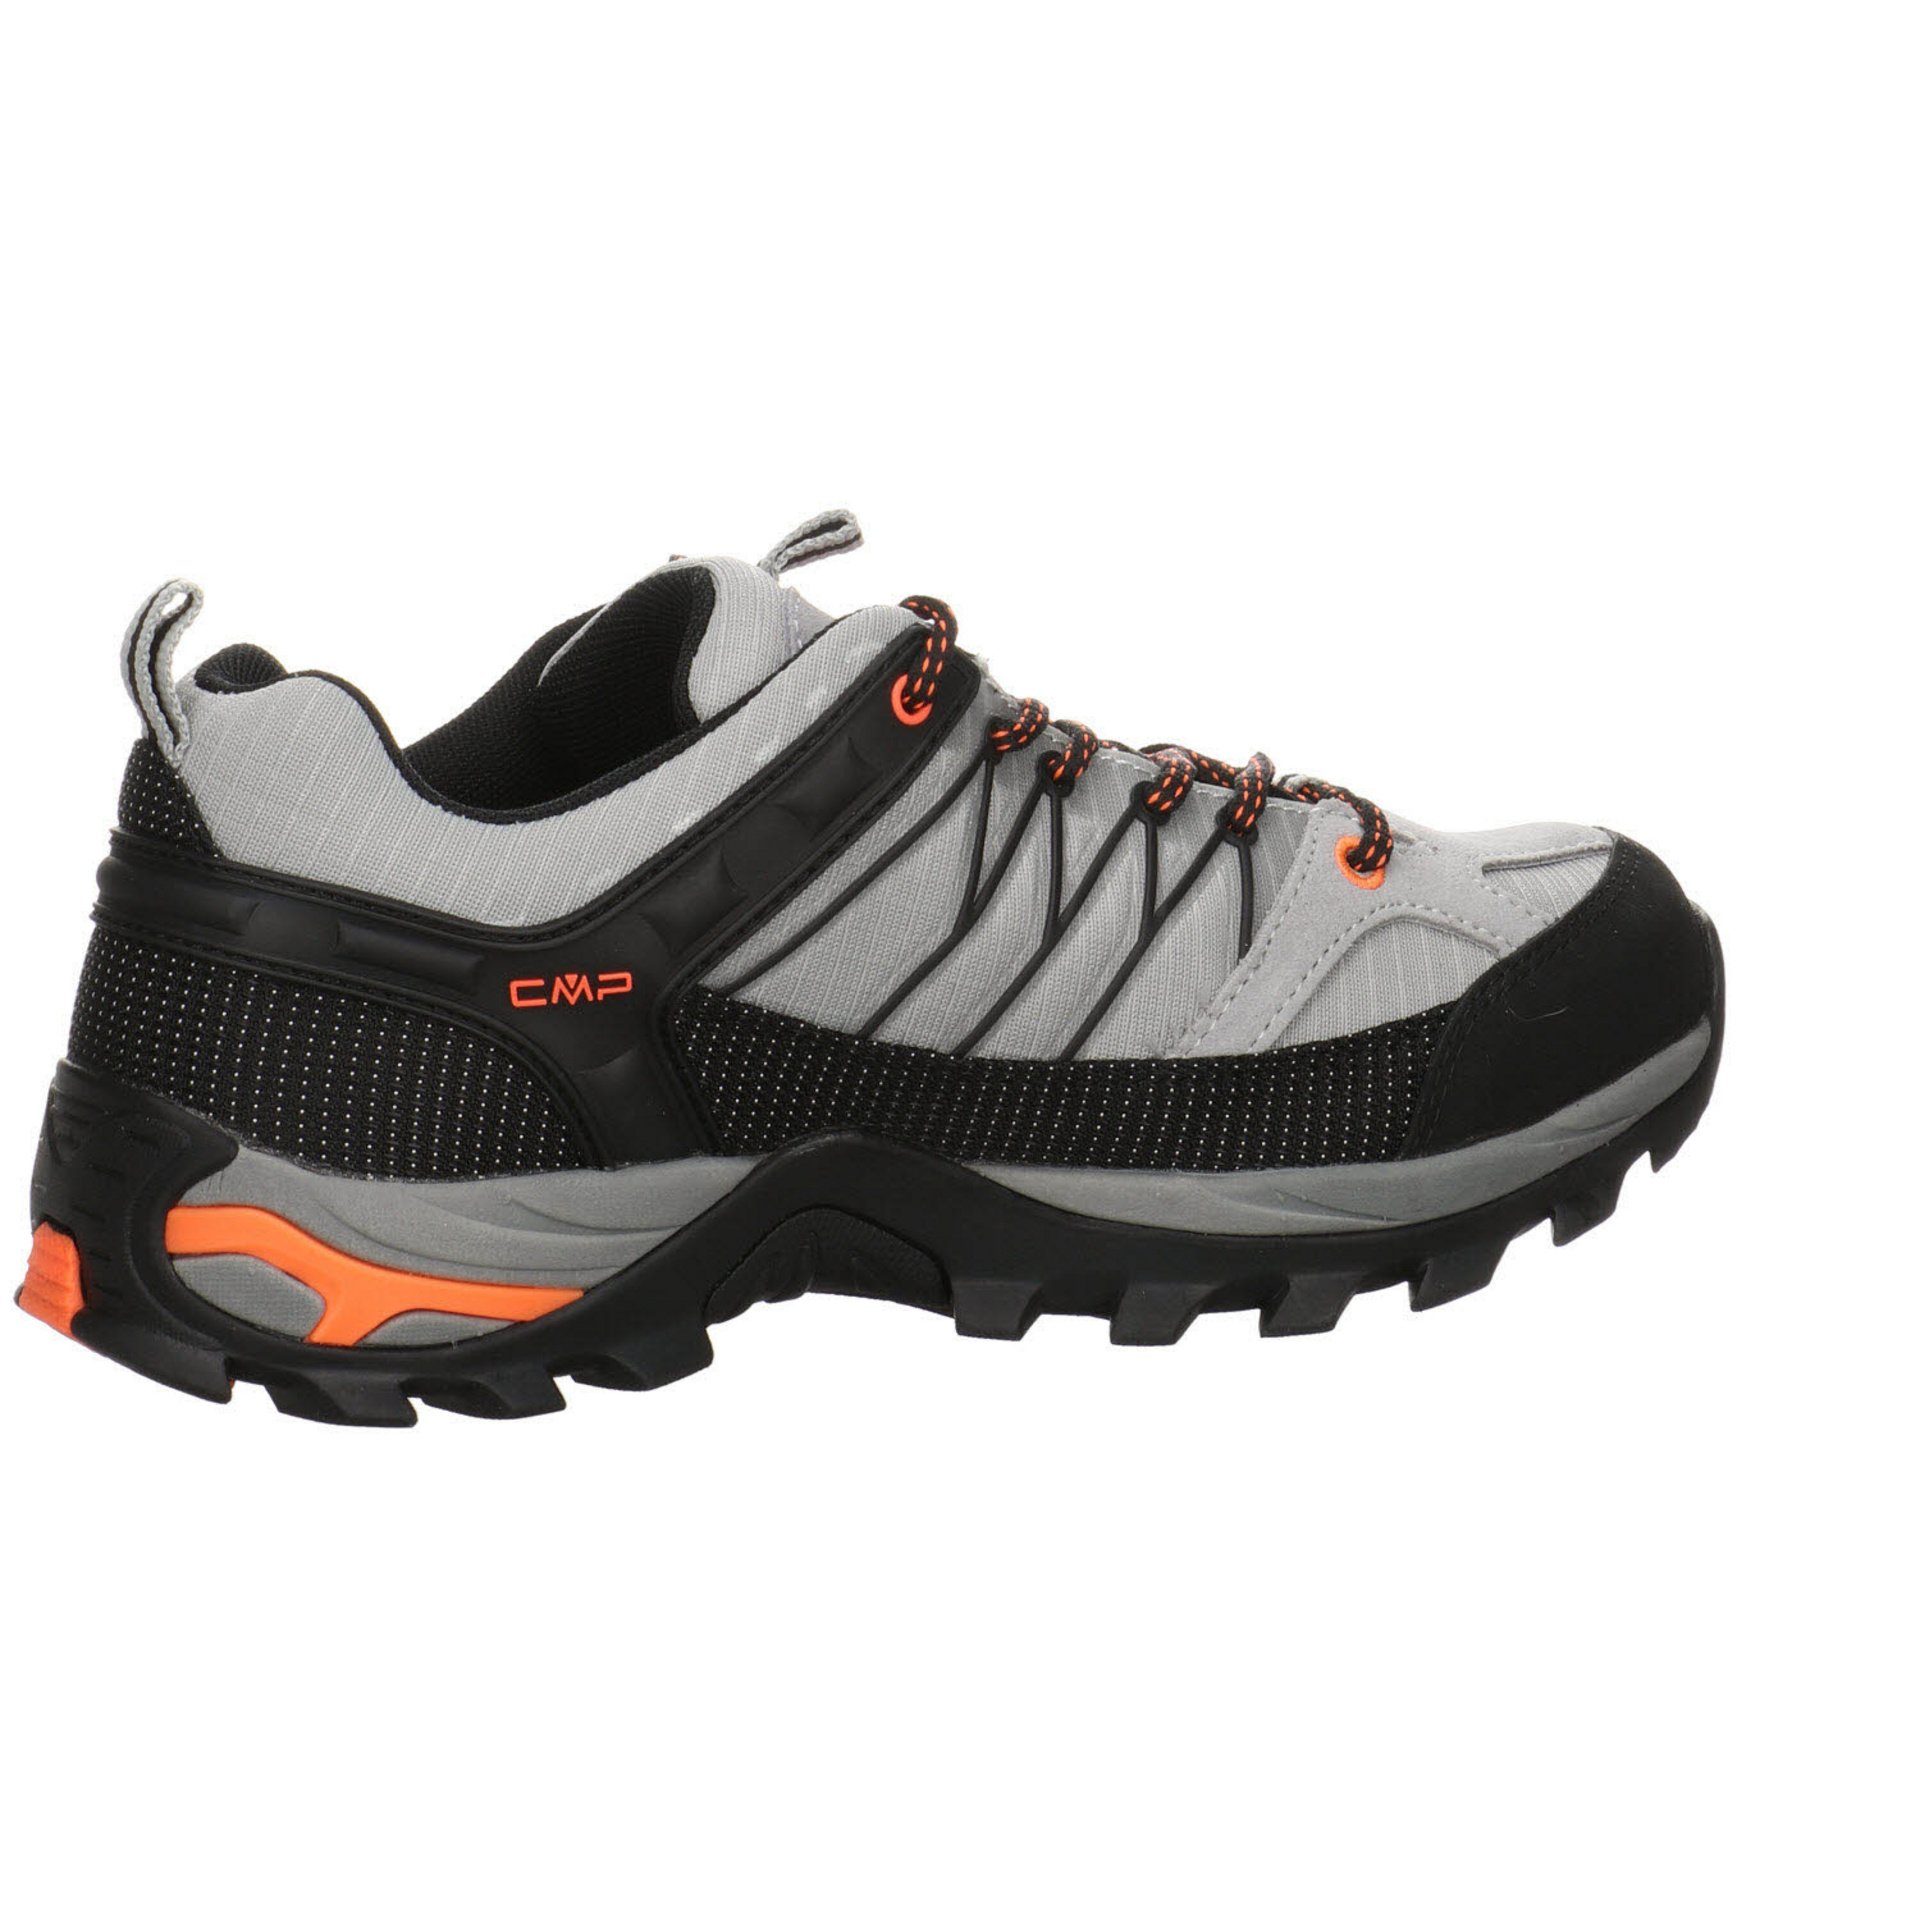 CMP (03201628) Schuhe Herren Halbschuh Rigel Outdoorschuh Leder-/Textilkombination Outdoor Trekking cemento-nero Mid